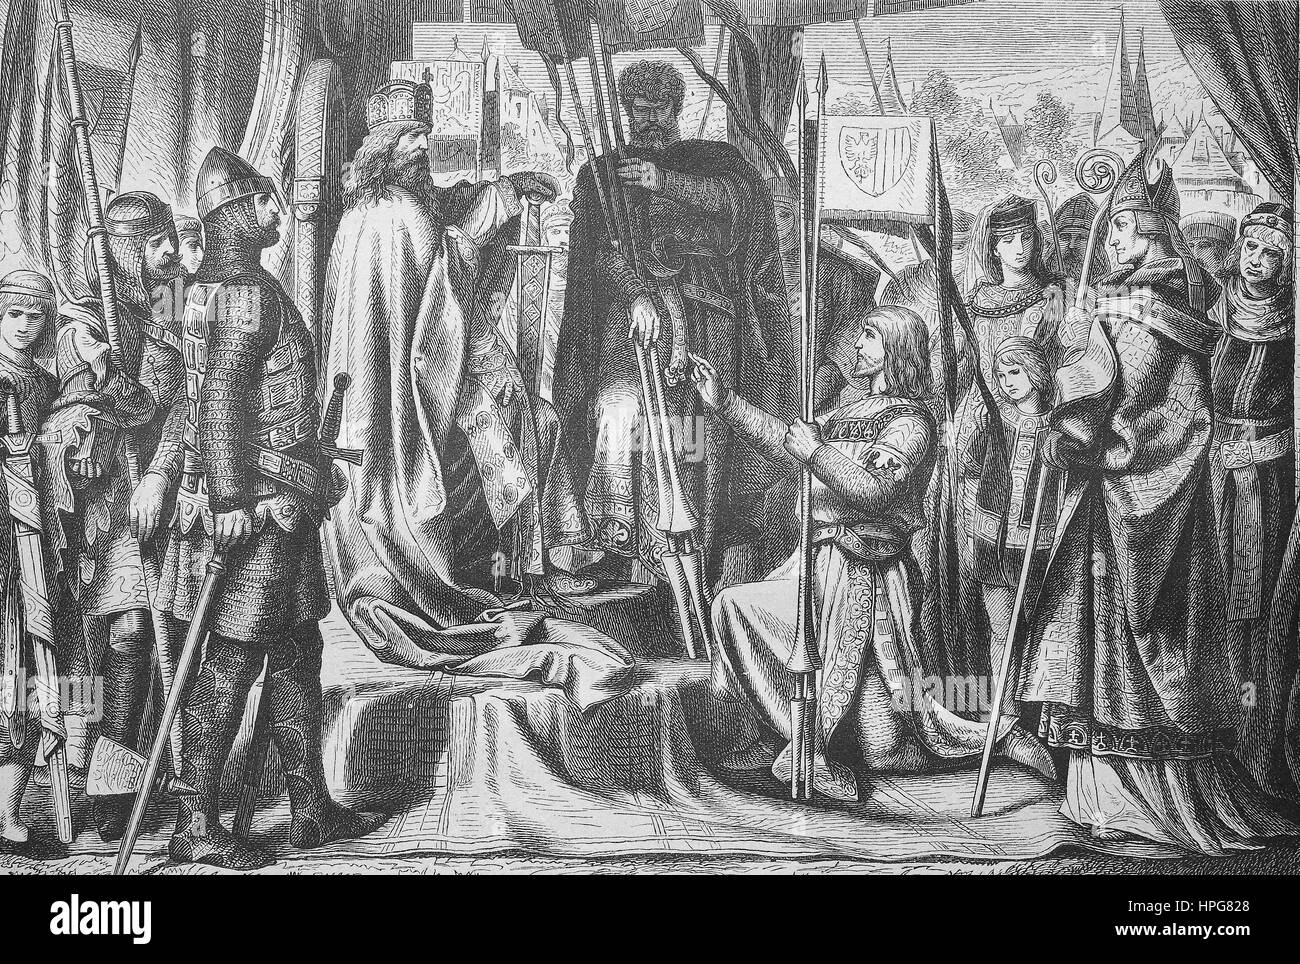 Heinrich II. wird als erster Herzog von Österreich belehnt, Henry II. war der erste Herzog von Österreich zu thronen, Heinrich II., Heinrich, 1112 - 1177, genannt Jasomirgott, war der Pfalzgraf bei Rhein von 1140 bis 1141, der Markgraf von Österreich von 1141 bis 1156, der Herzog von Bayern von 1141 bis 1156 als Heinrich XI, und der Herzog von Österreich von 1156 bis 1177. Er war ein Mitglied des Hauses der Babenberger, digital verbesserte Reproduktion eines Holzschnitt aus dem Jahr 1885 Stockfoto